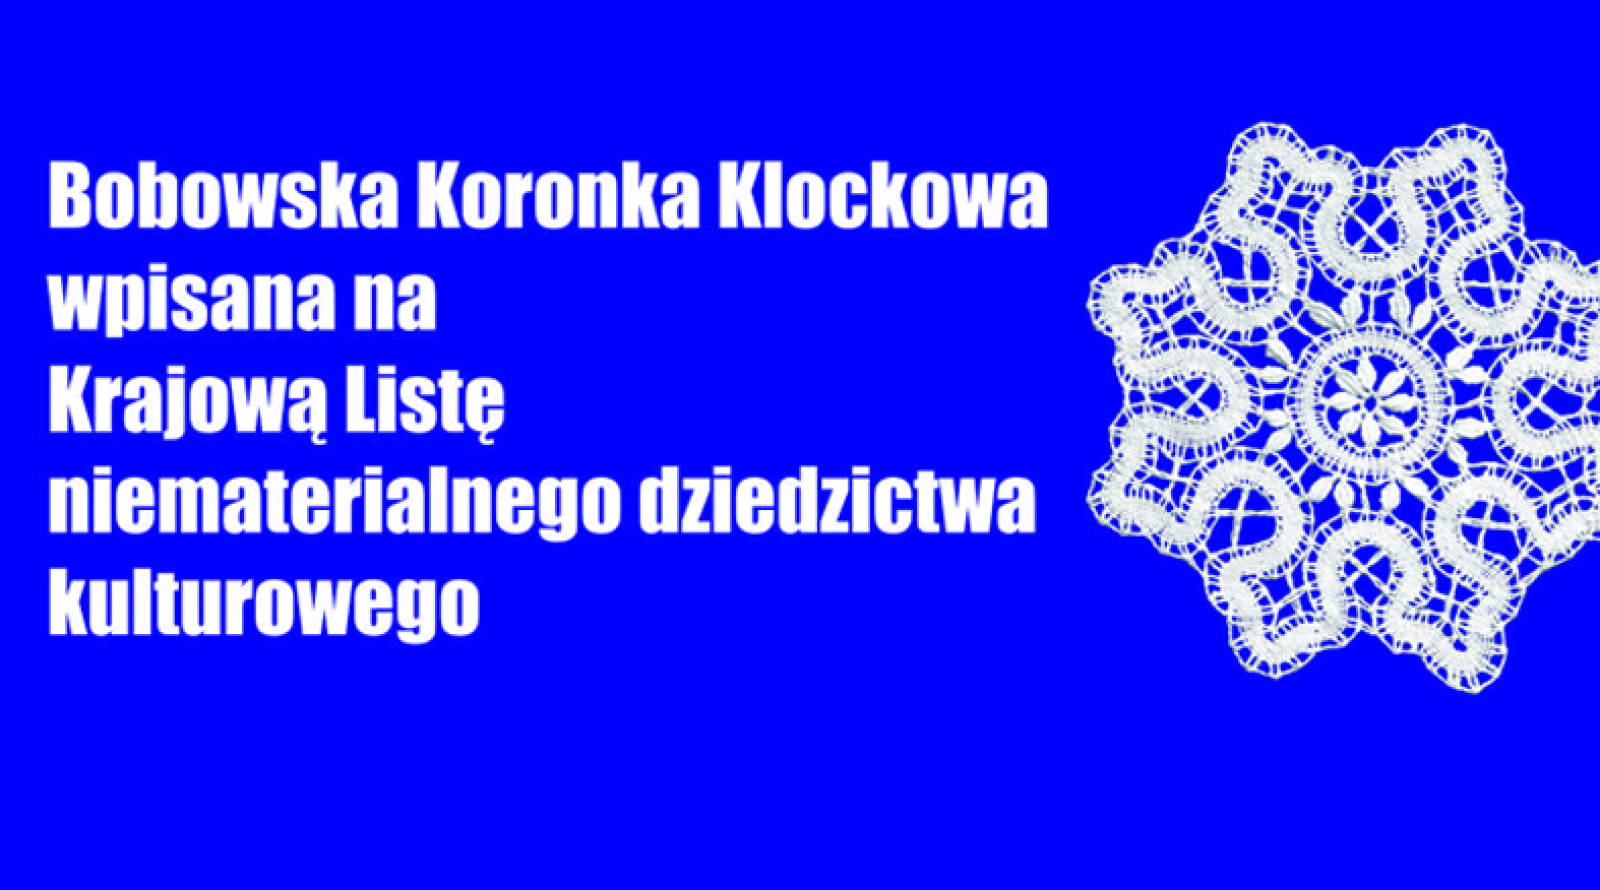 Bobowska Koronka Klockowa na Krajowej Liście niematerialnego dziedzictwa kulturowego